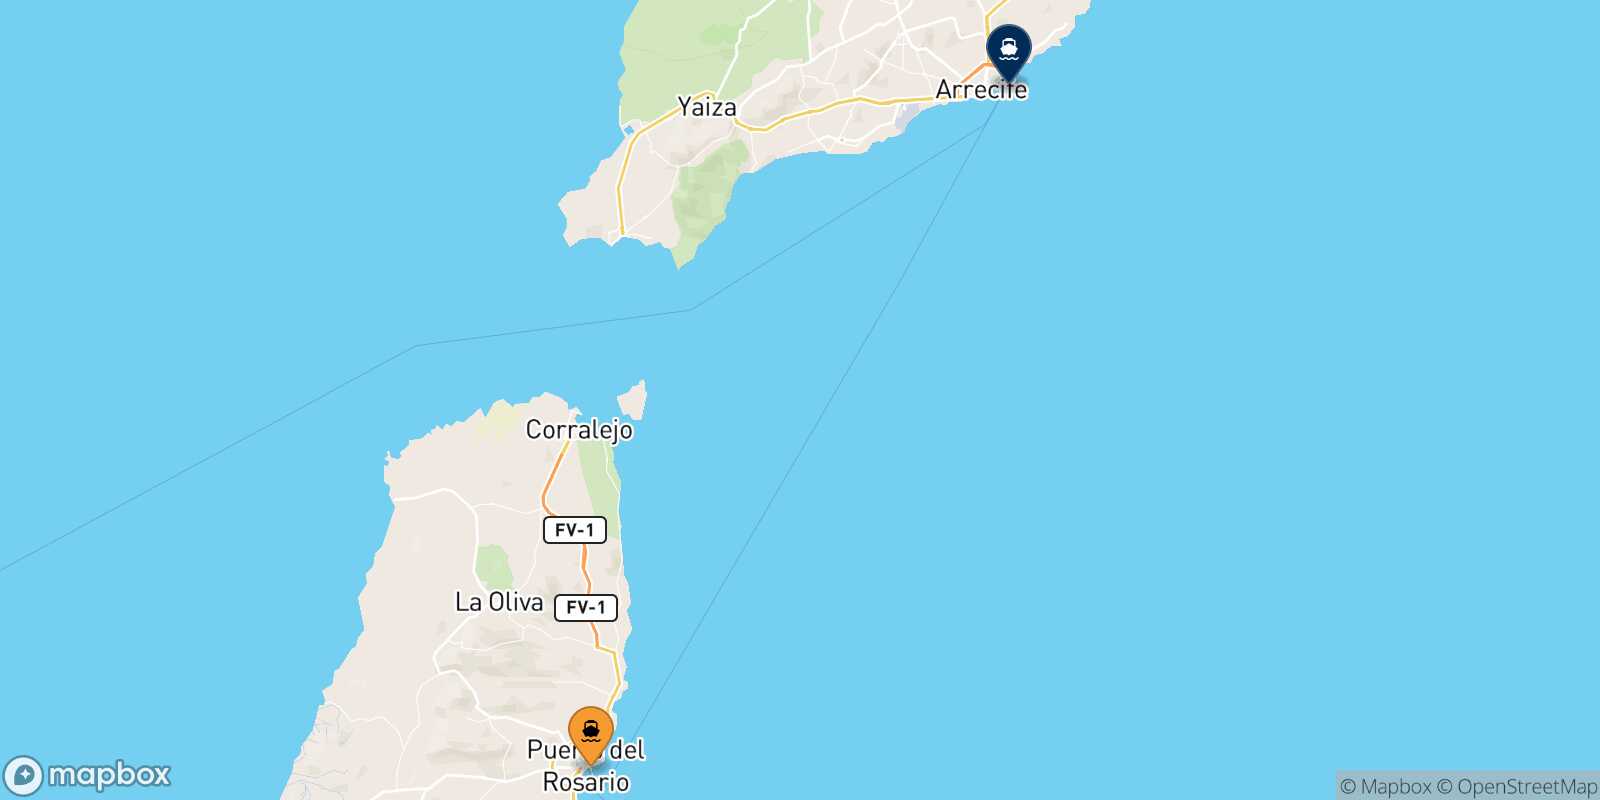 Puerto Del Rosario (Fuerteventura) Arrecife (Lanzarote) route map